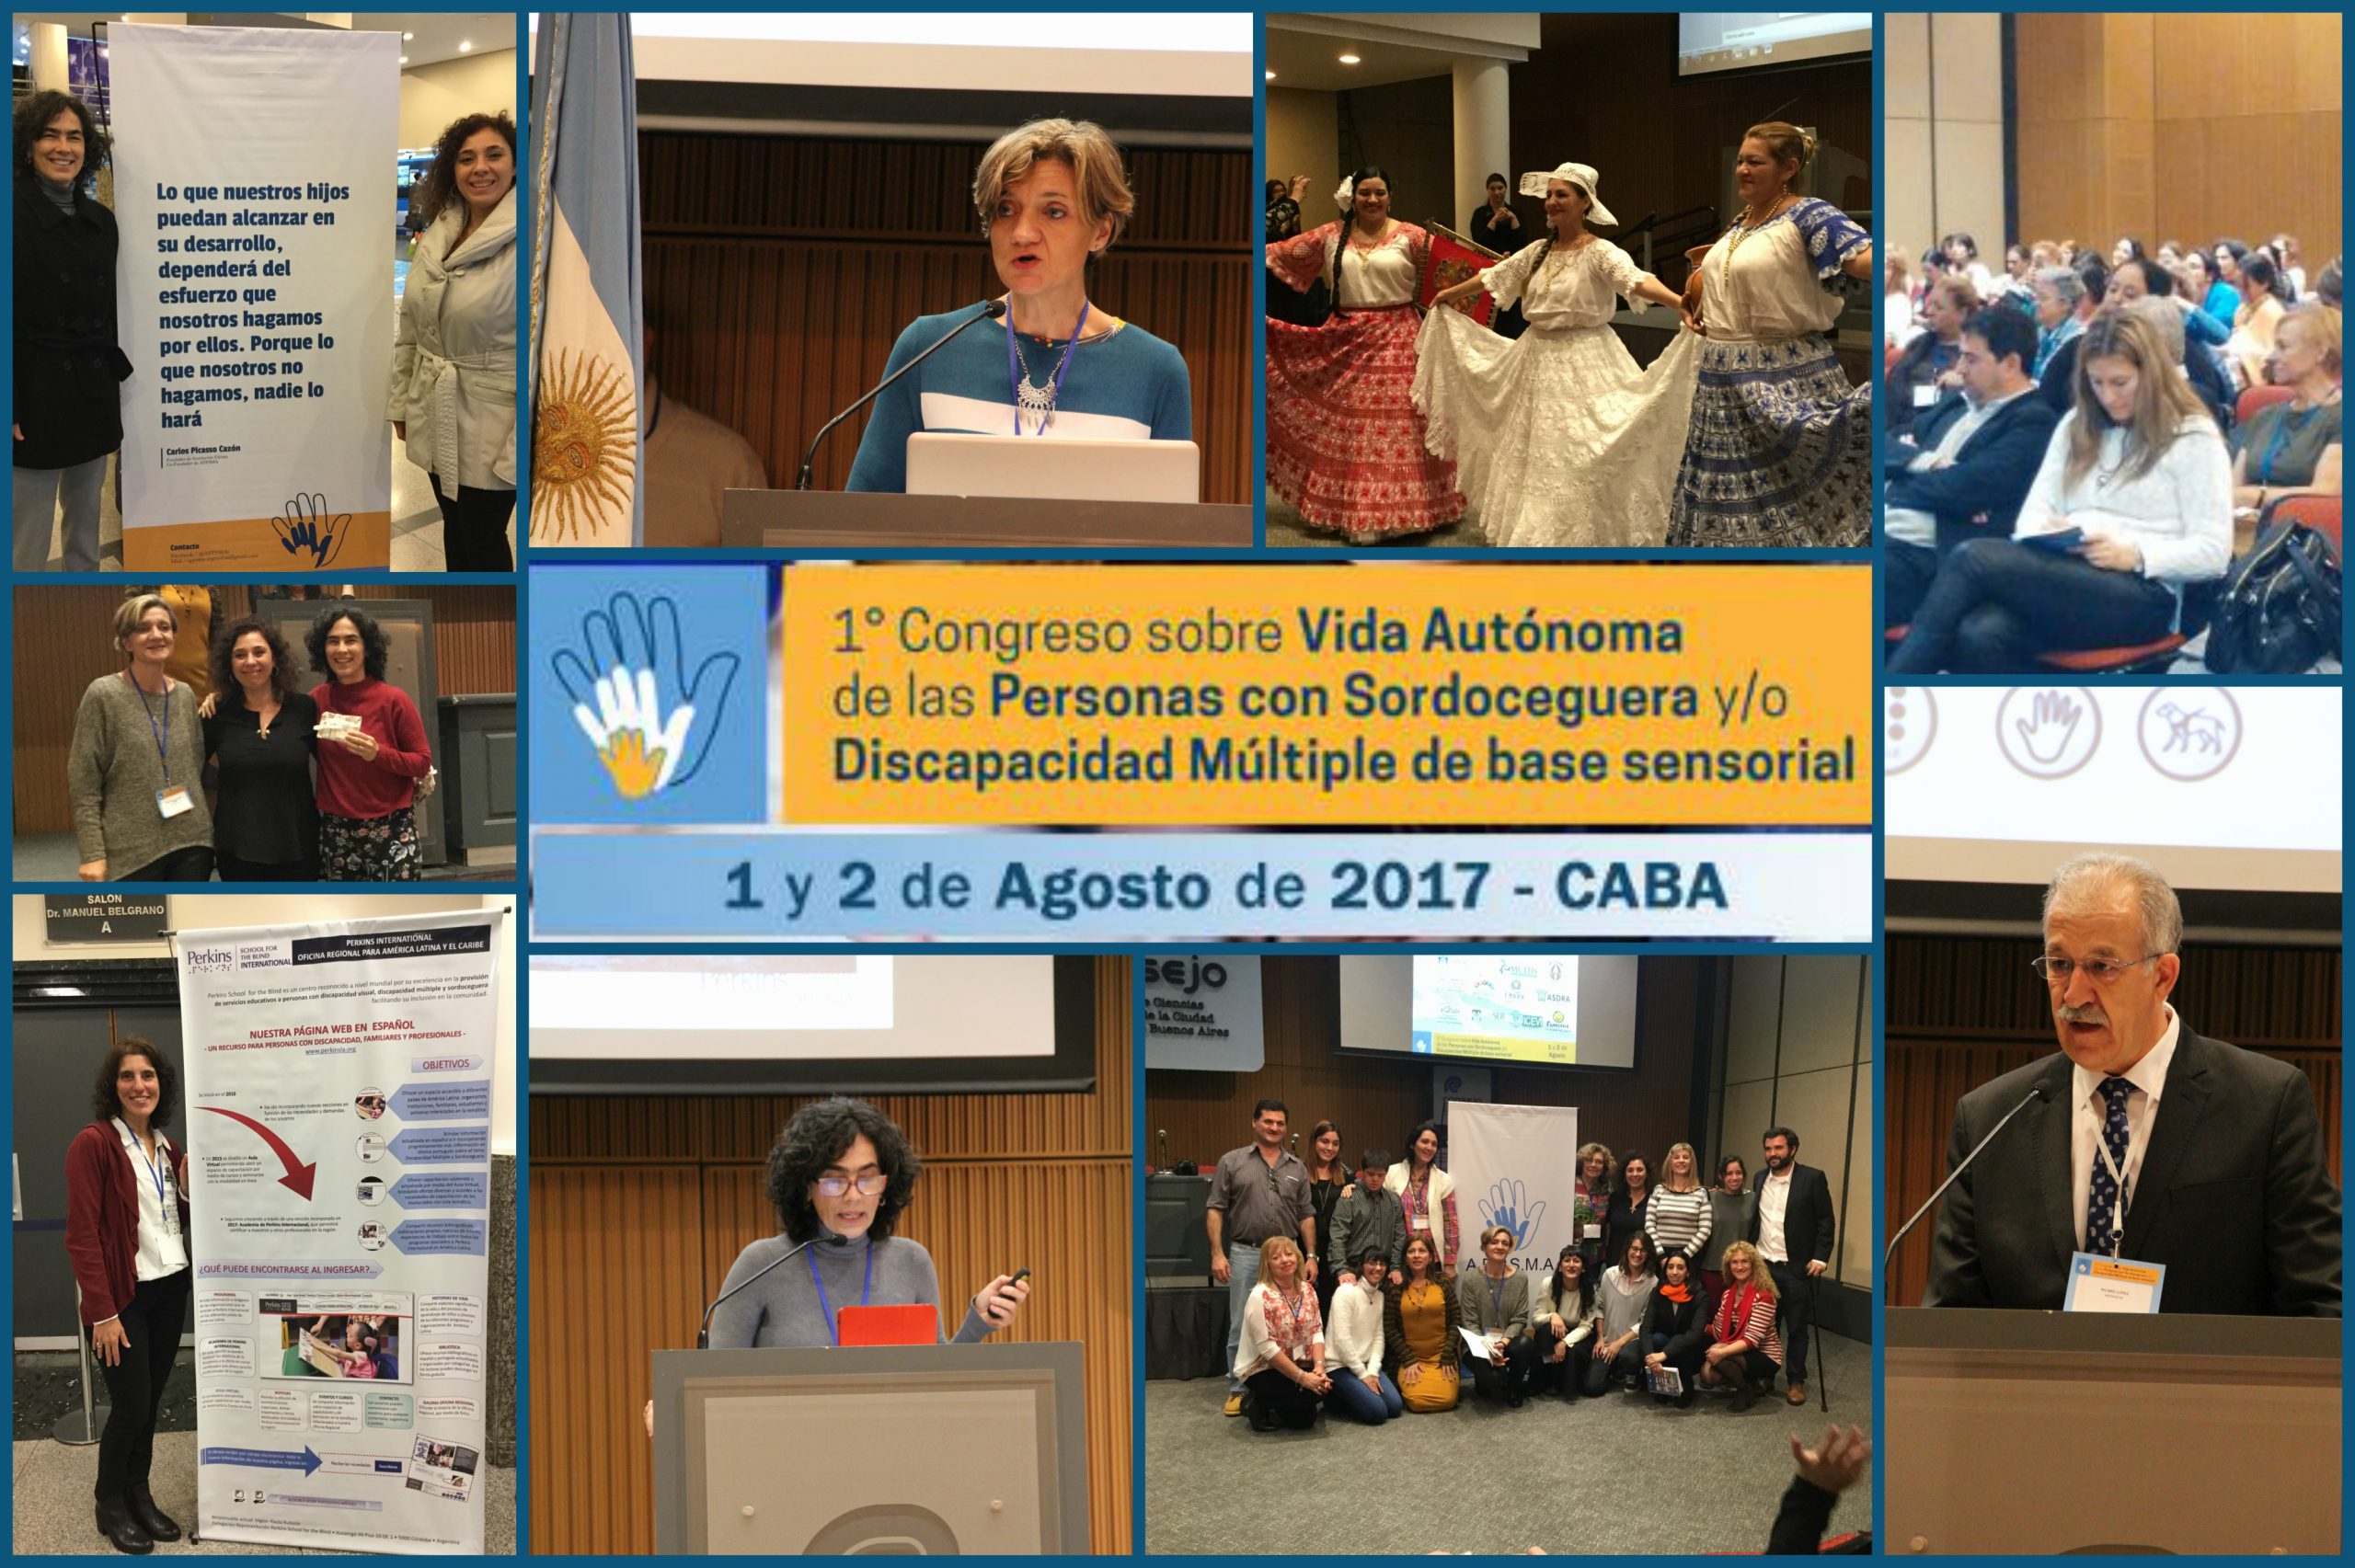 Congreso Internacional sobre Vida Autónoma de personas con sordoceguera y discapacidad múltiple